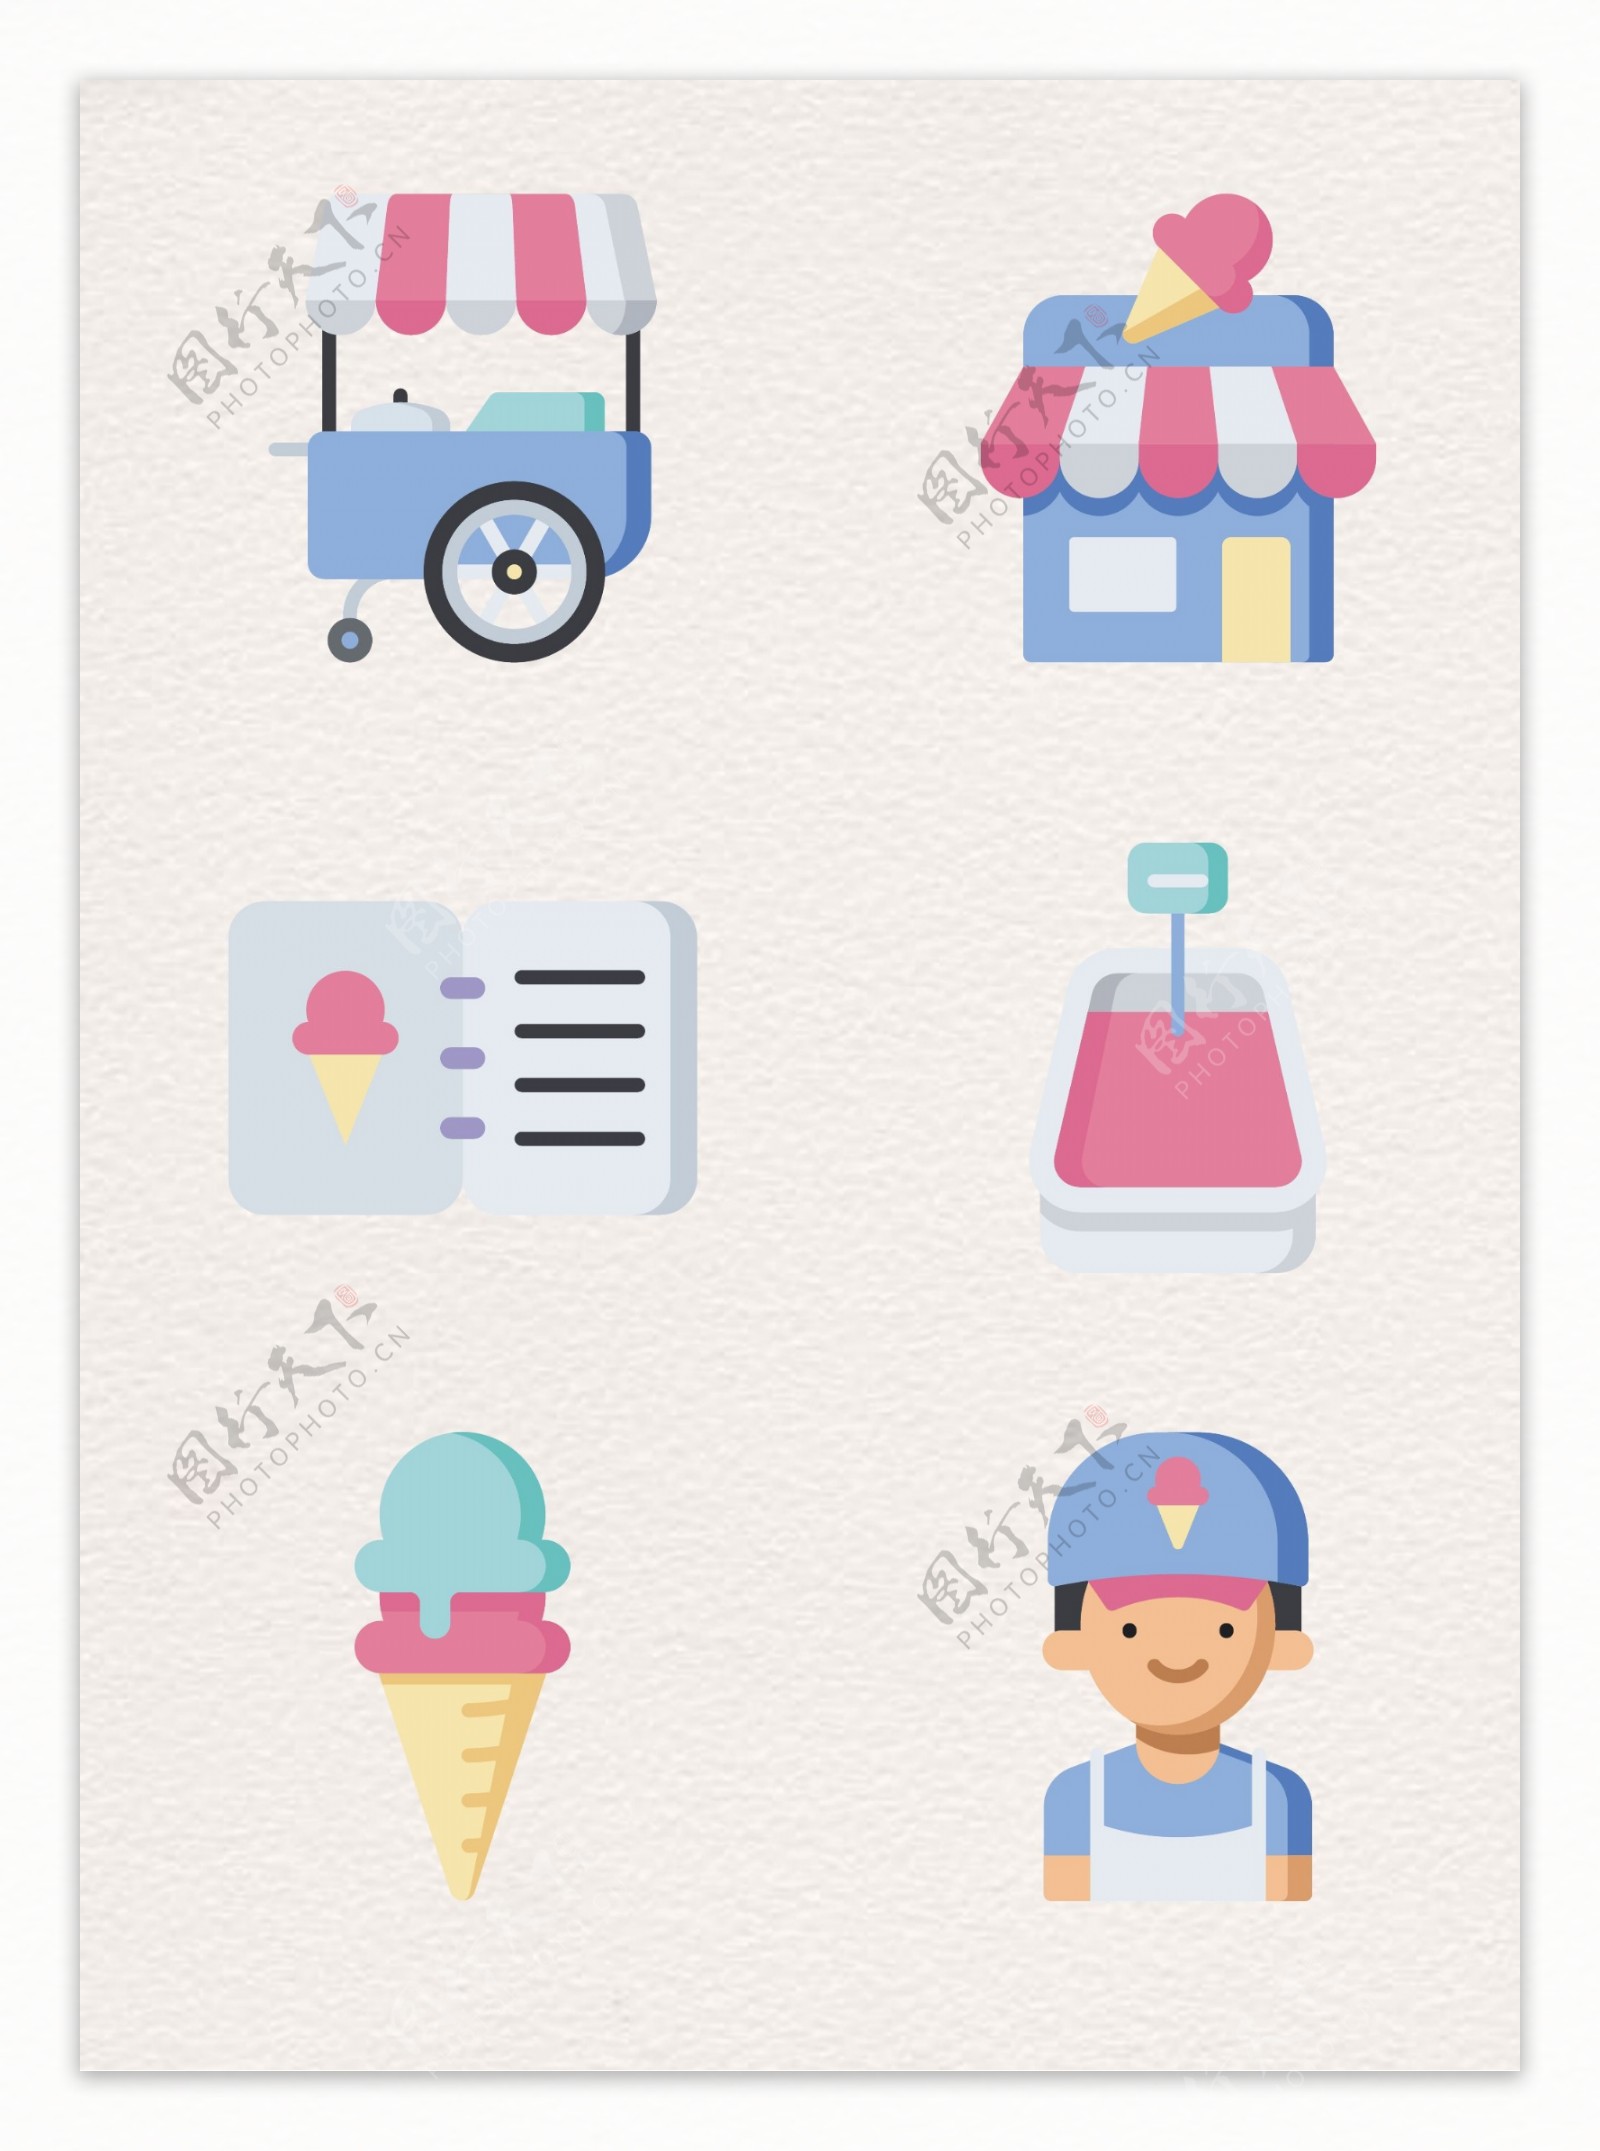 粉蓝色冰淇淋店元素卡通设计